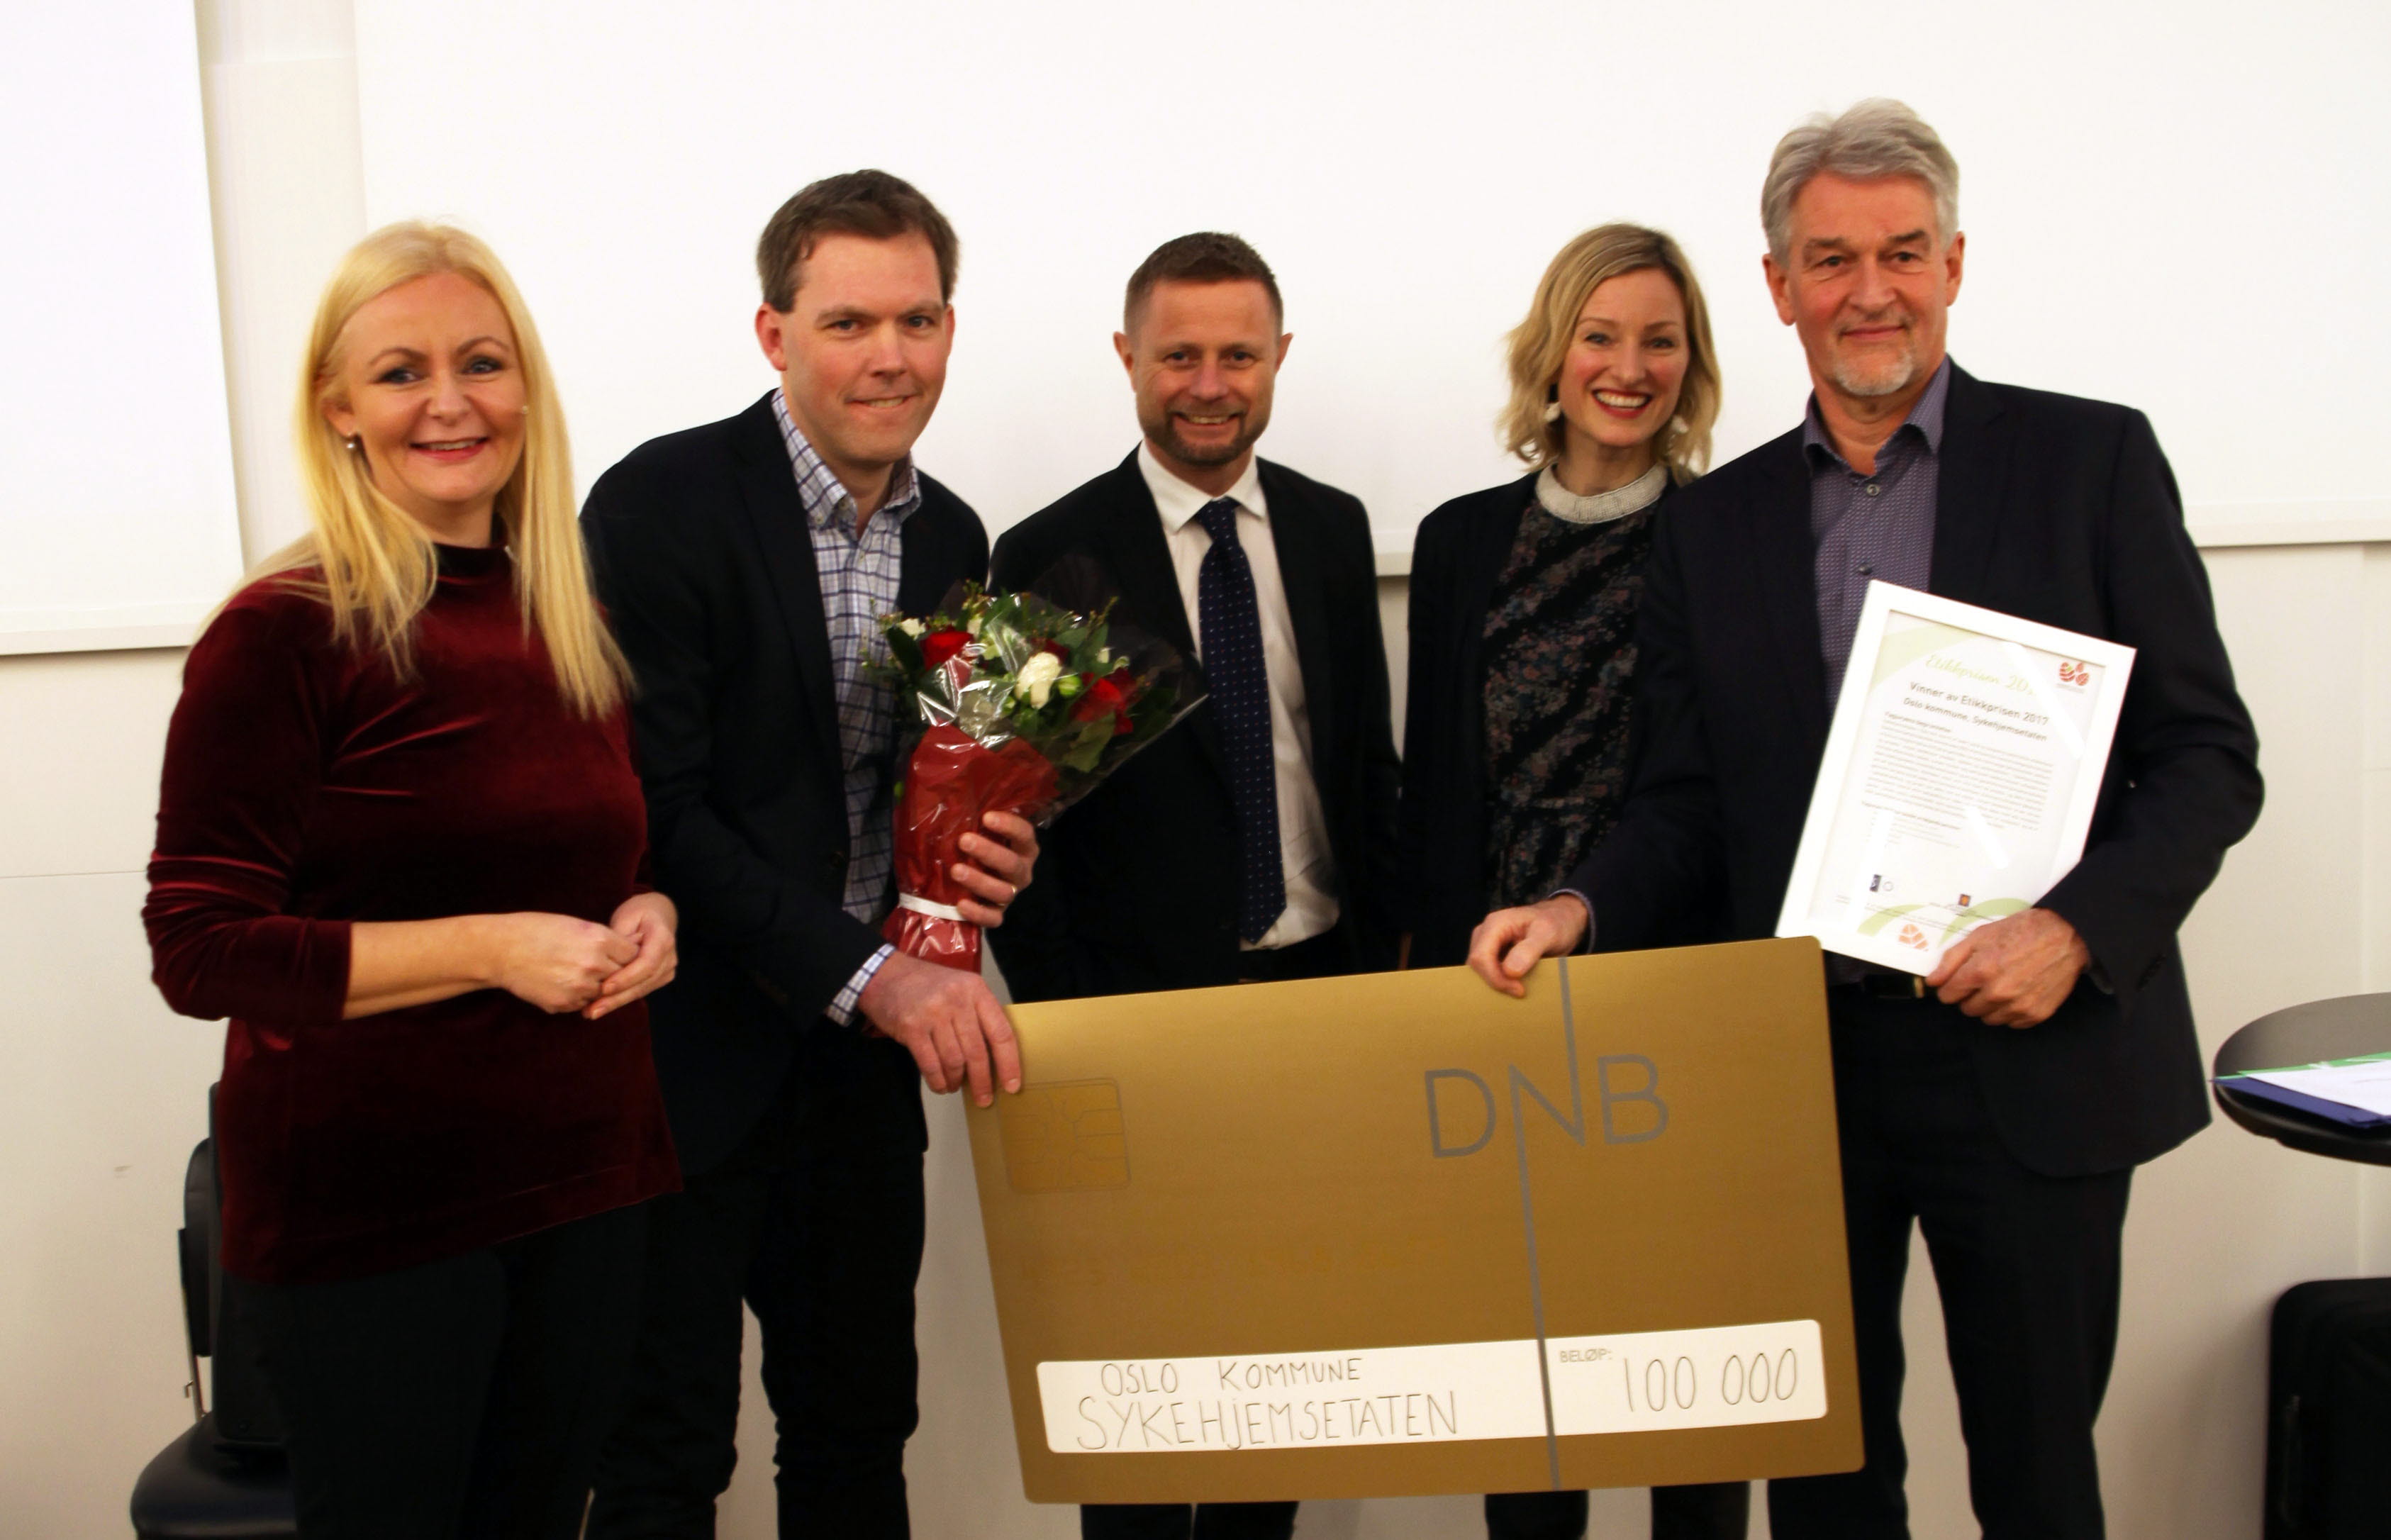 Sykehjemsetaten i Oslo vant Etikkprisen 2017